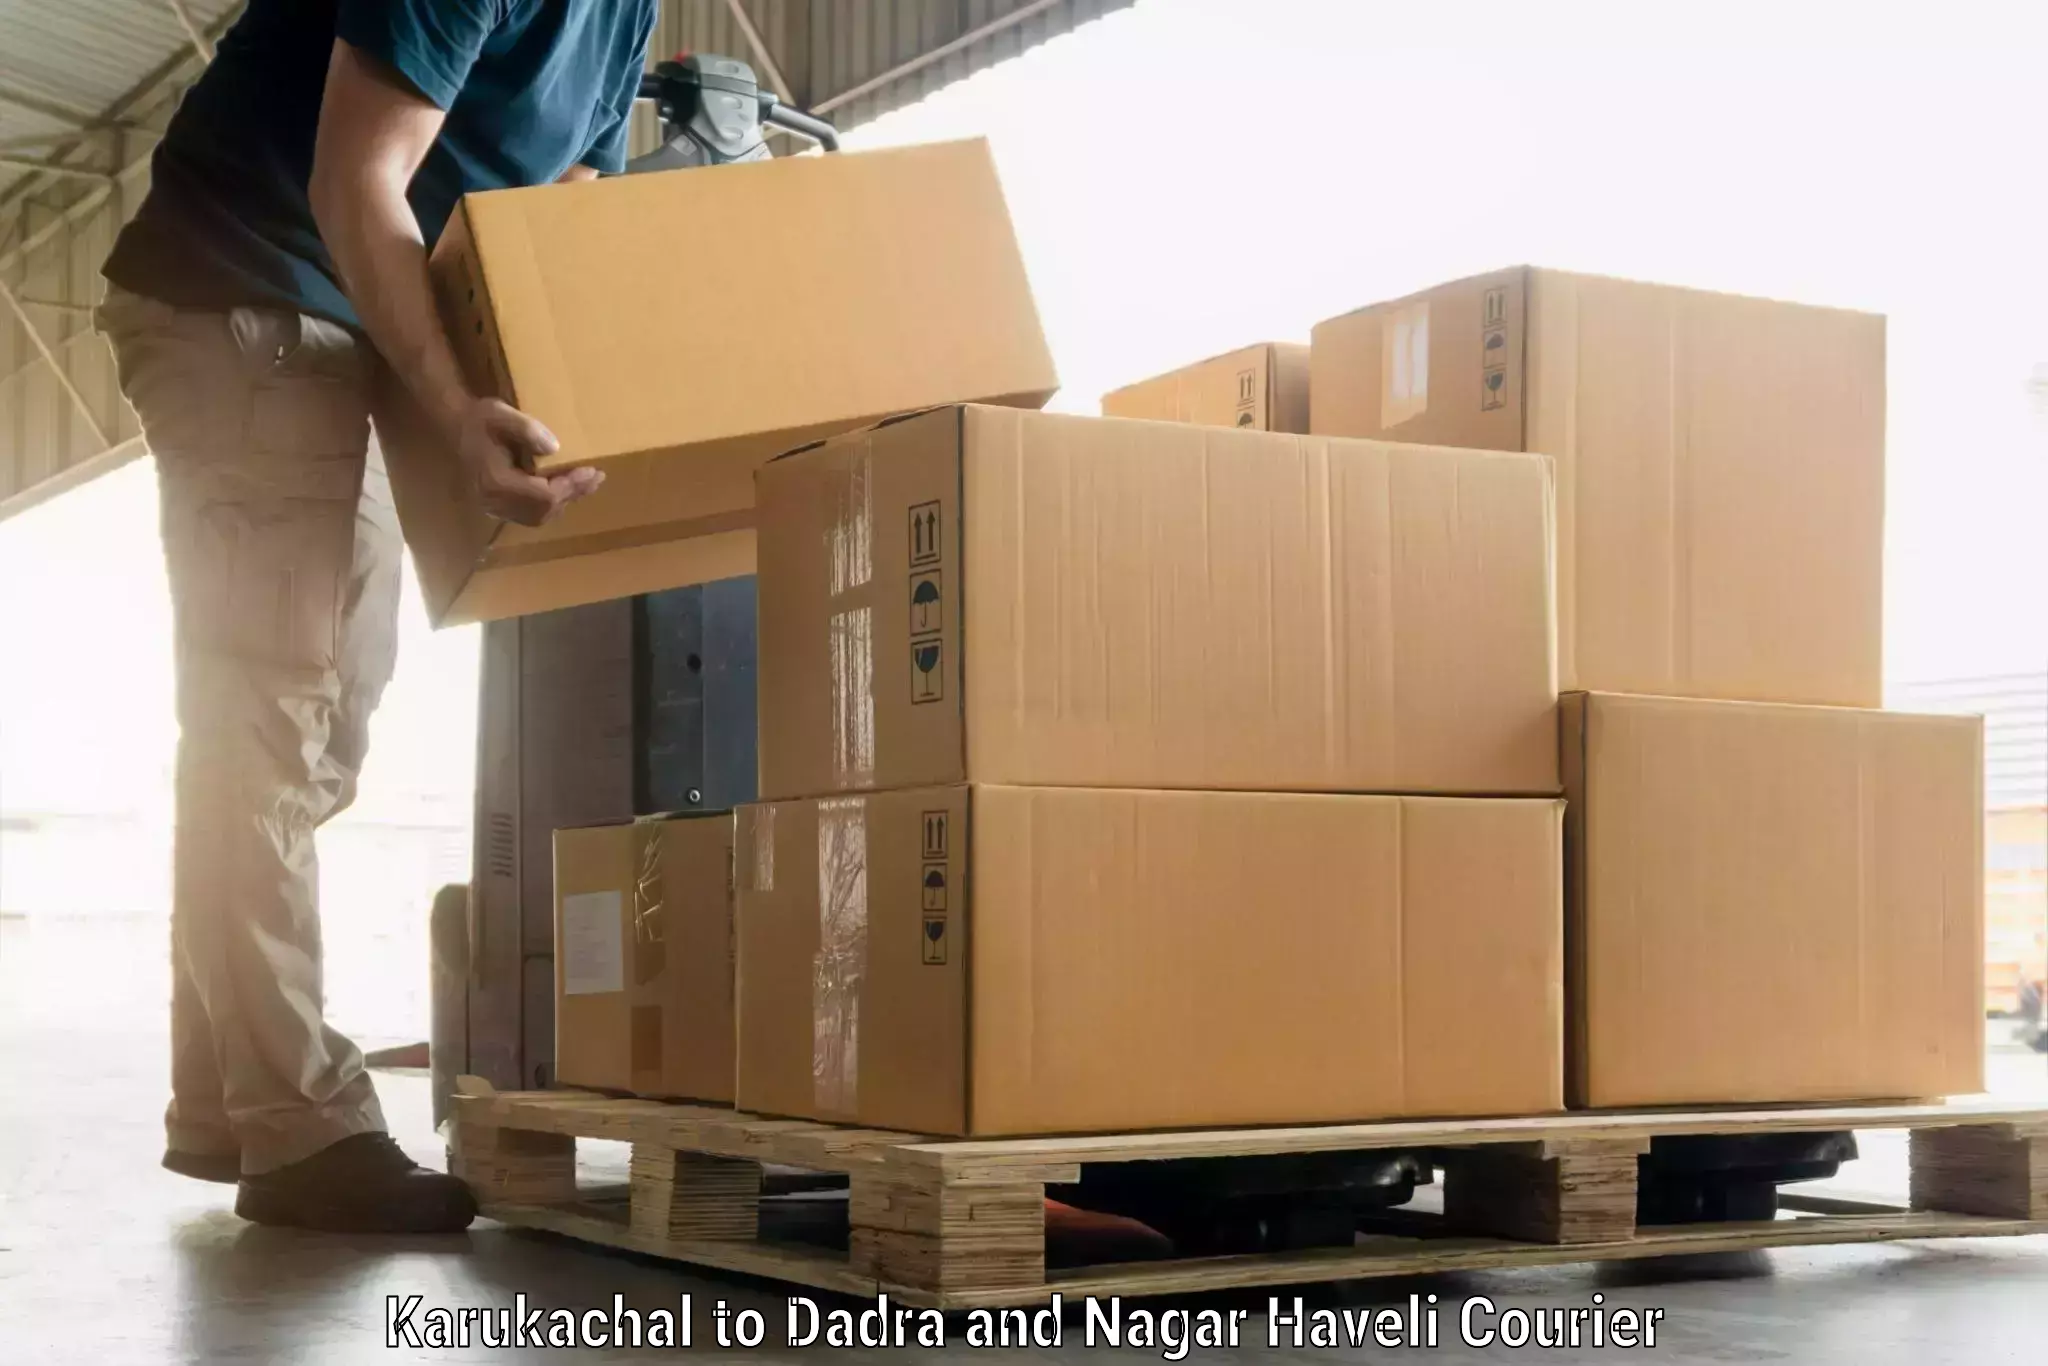 Urgent luggage shipment Karukachal to Dadra and Nagar Haveli